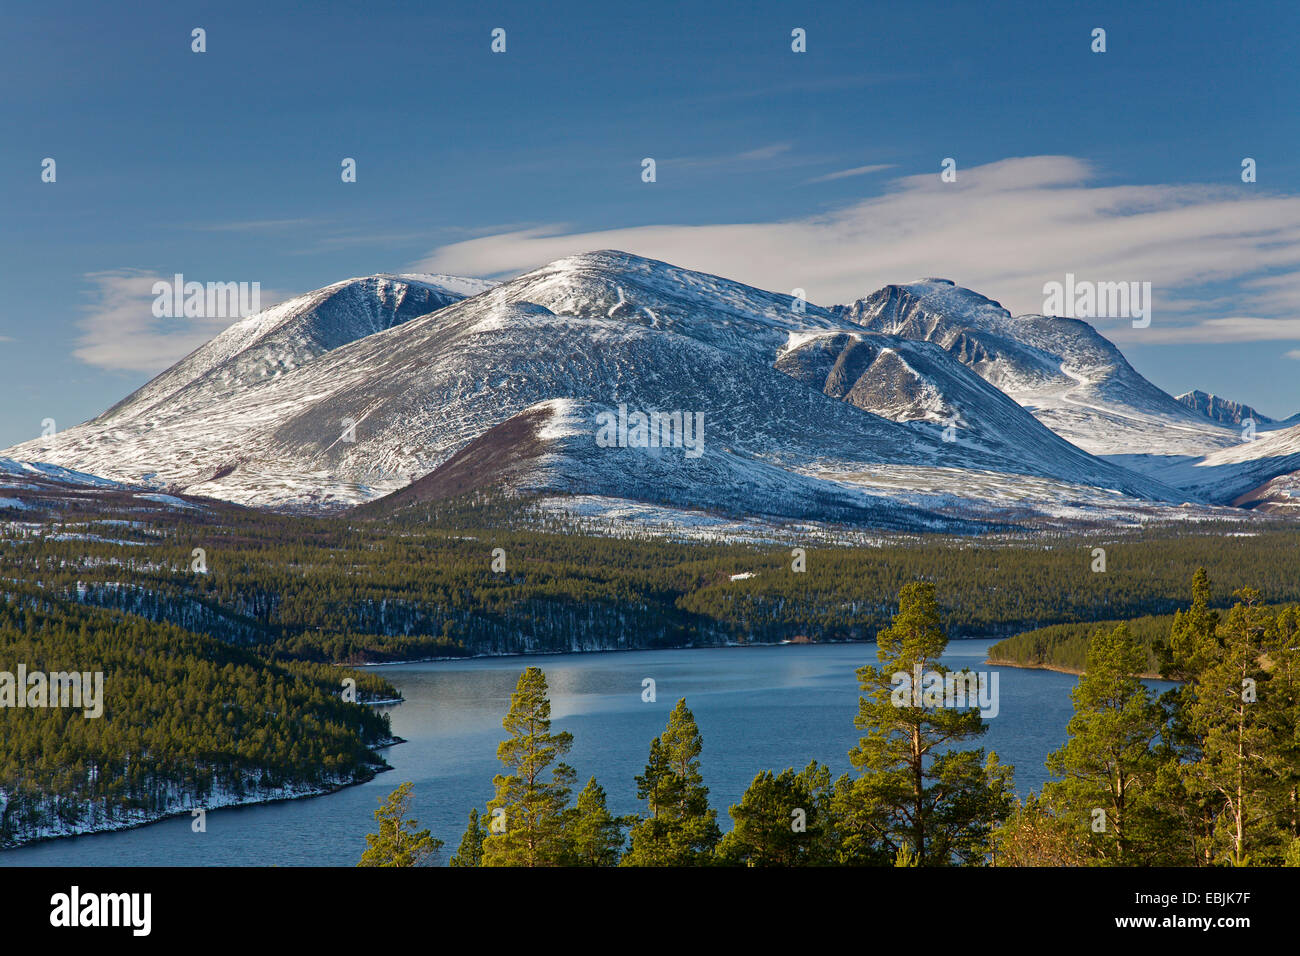 Atn lake and Rondane mountain at Sohlbergplassen, Norway, Fylke Hedmark Stock Photo